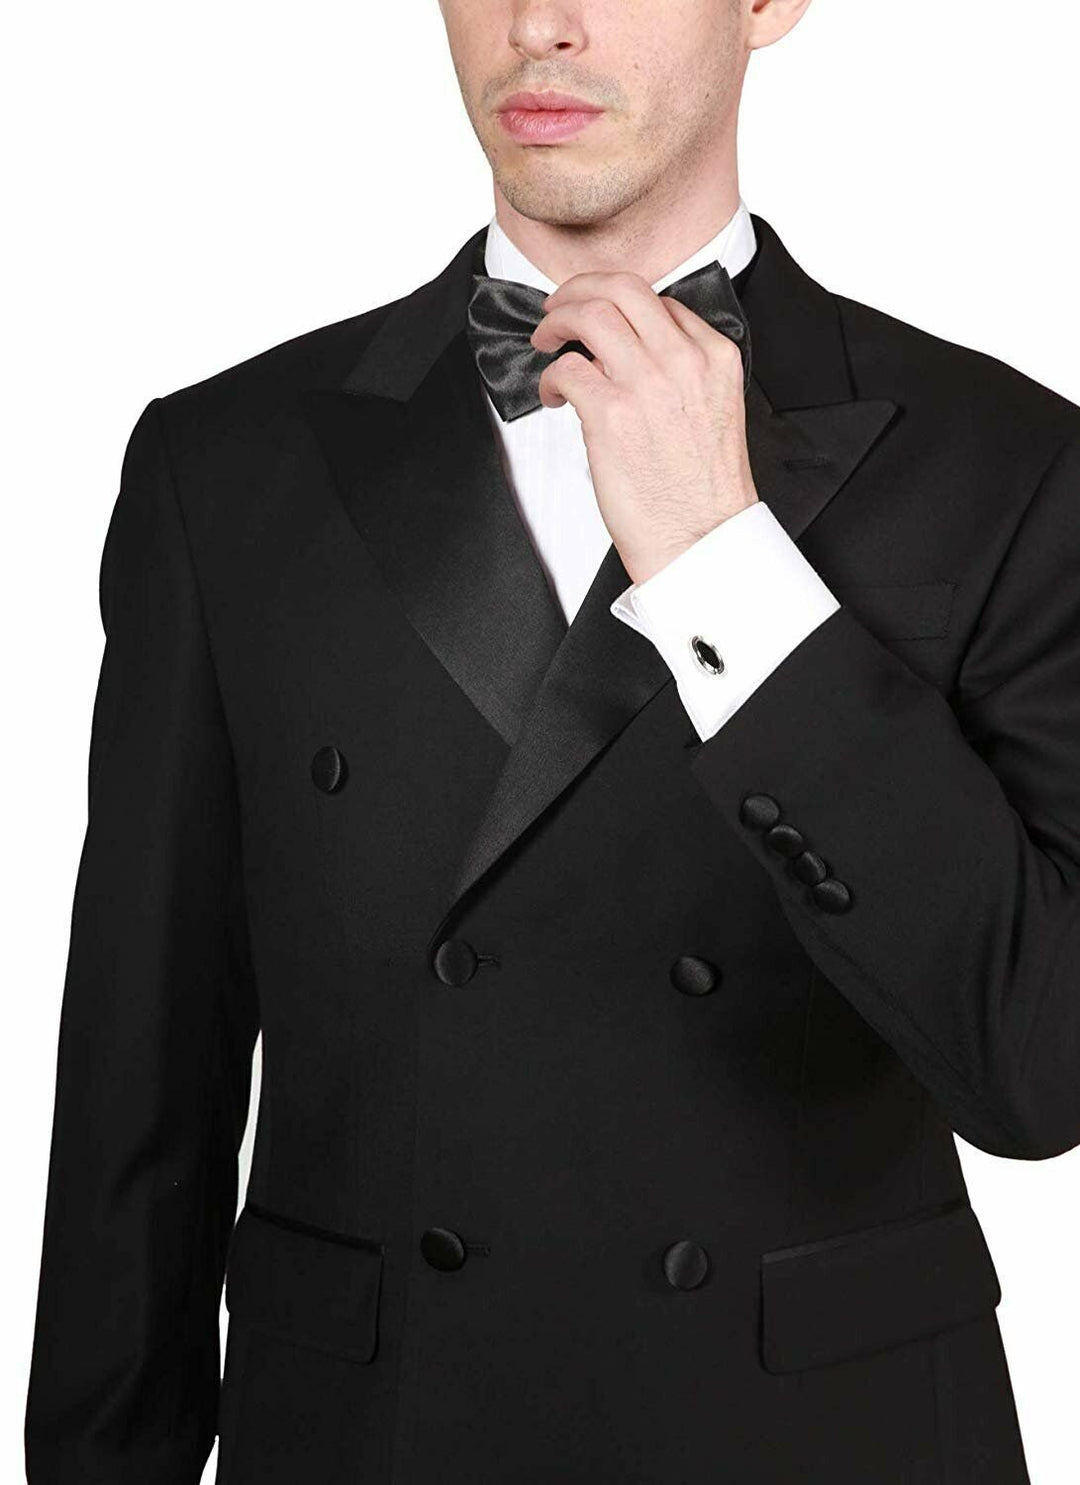 Adam Baker Men's Formal Regular Fit 2-Piece Double Breasted Peak Lapel 100% Wool Tuxedo